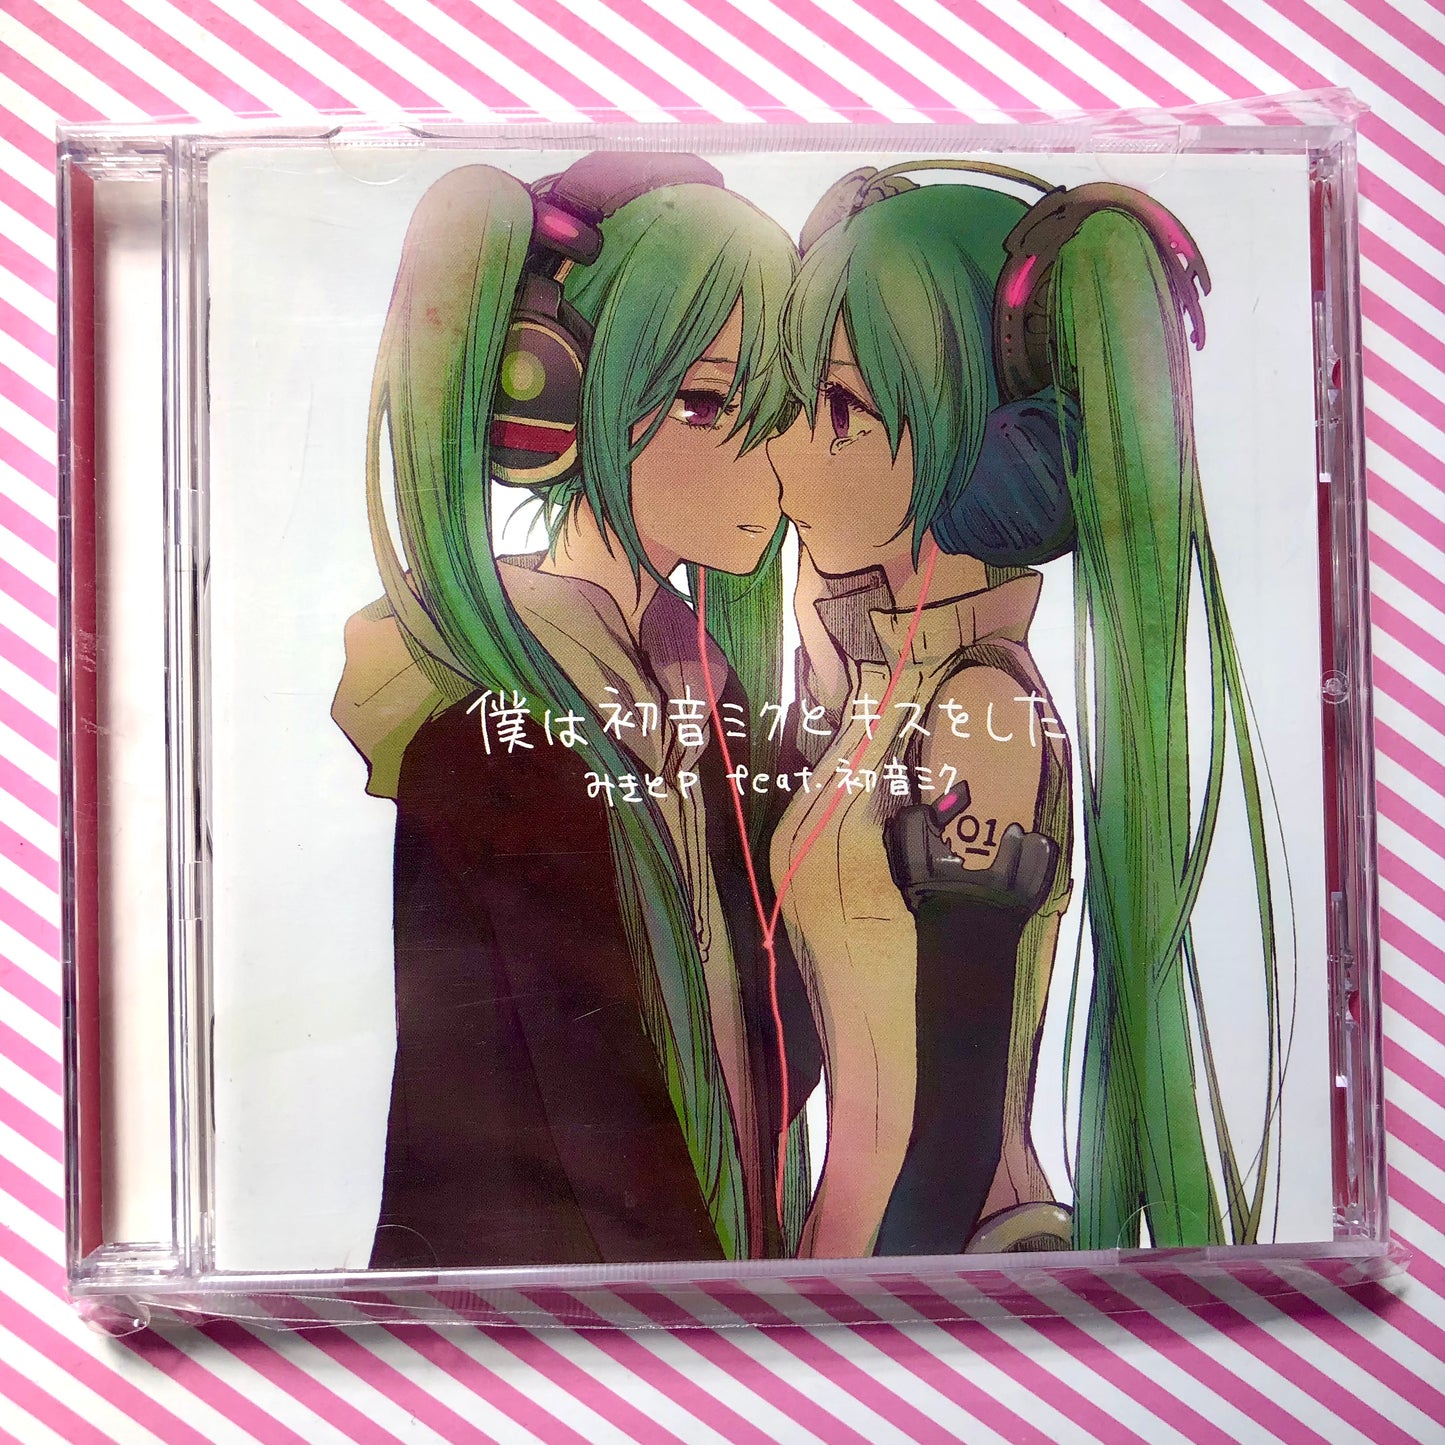 MikitoP - Boku wa Hatsune Miku to Kiss wo Shita de Mikito-P Vocaloid Hatsune Miku Album CD